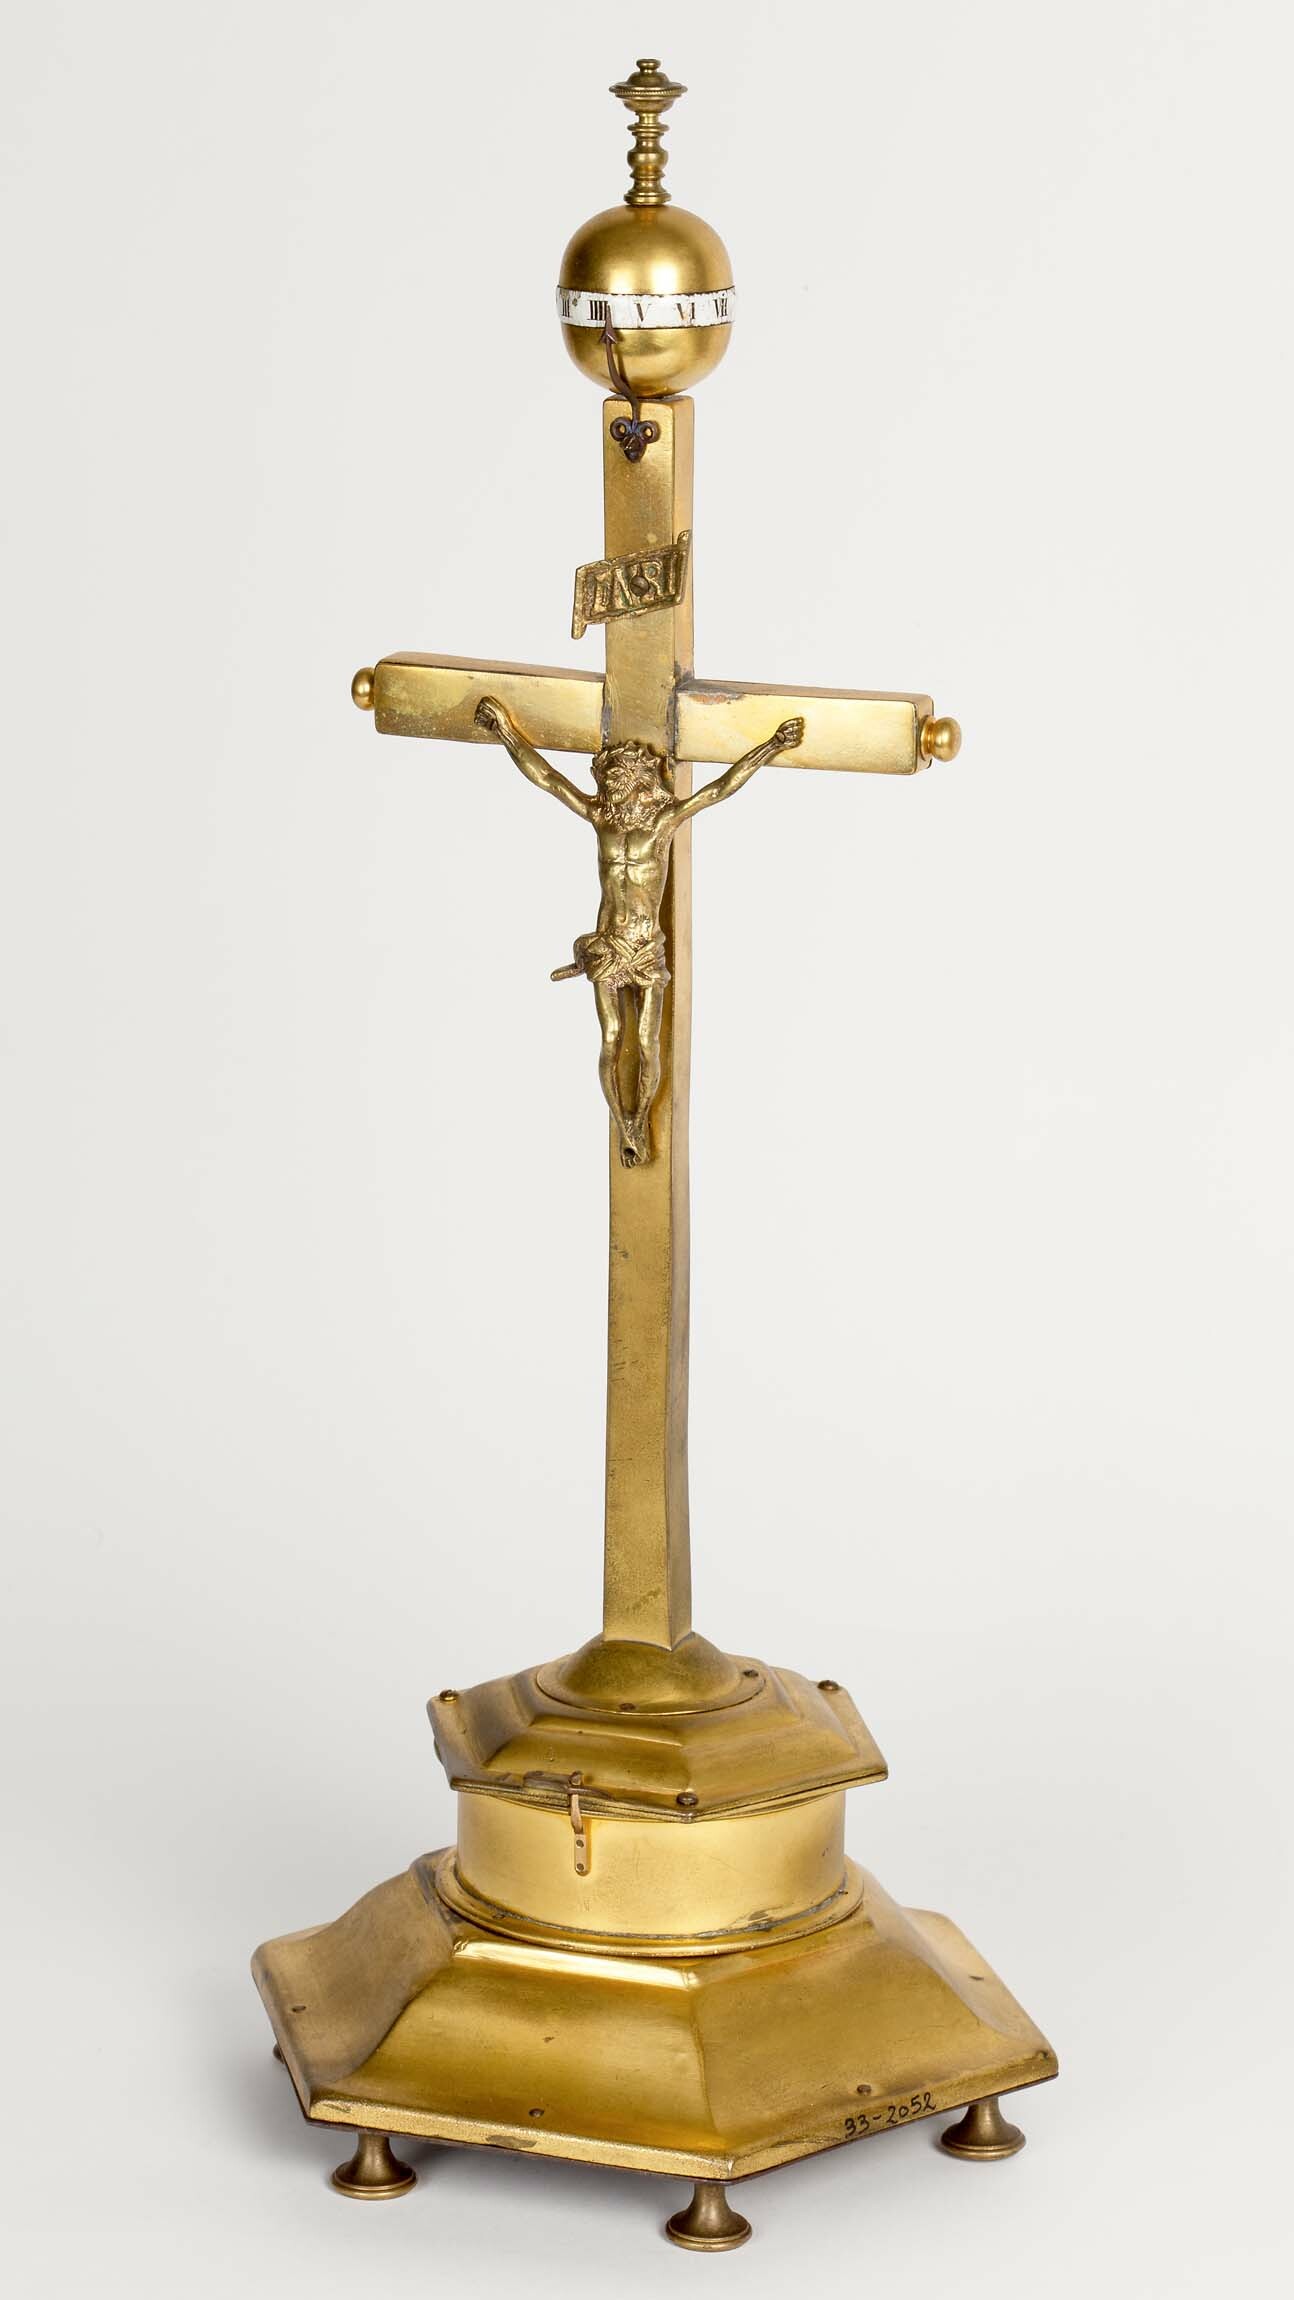 Kruzifixuhr, Augsburg, Ende 17. Jahrhundert (Deutsches Uhrenmuseum CC BY-SA)